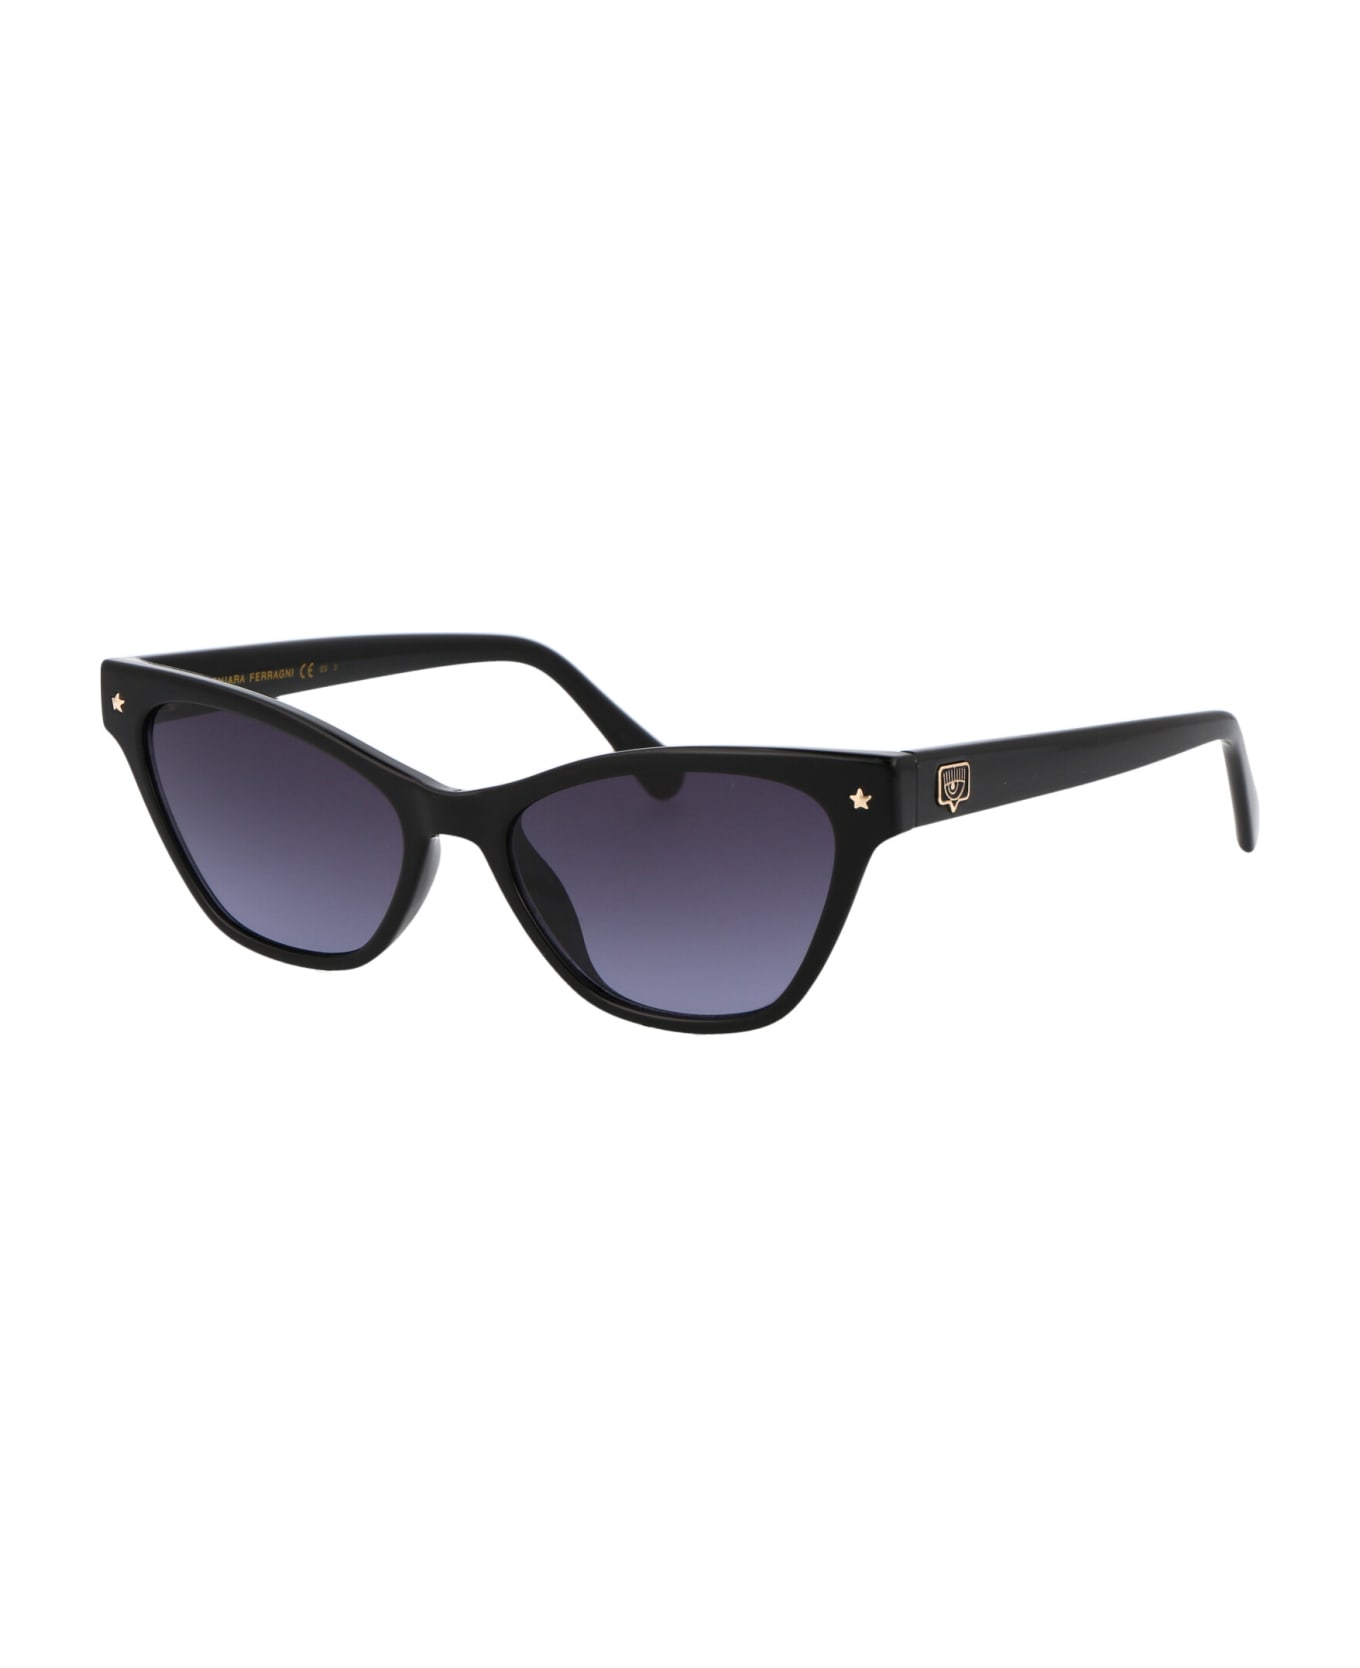 Chiara Ferragni Cf 1020/s Sunglasses - 8079O BLACK